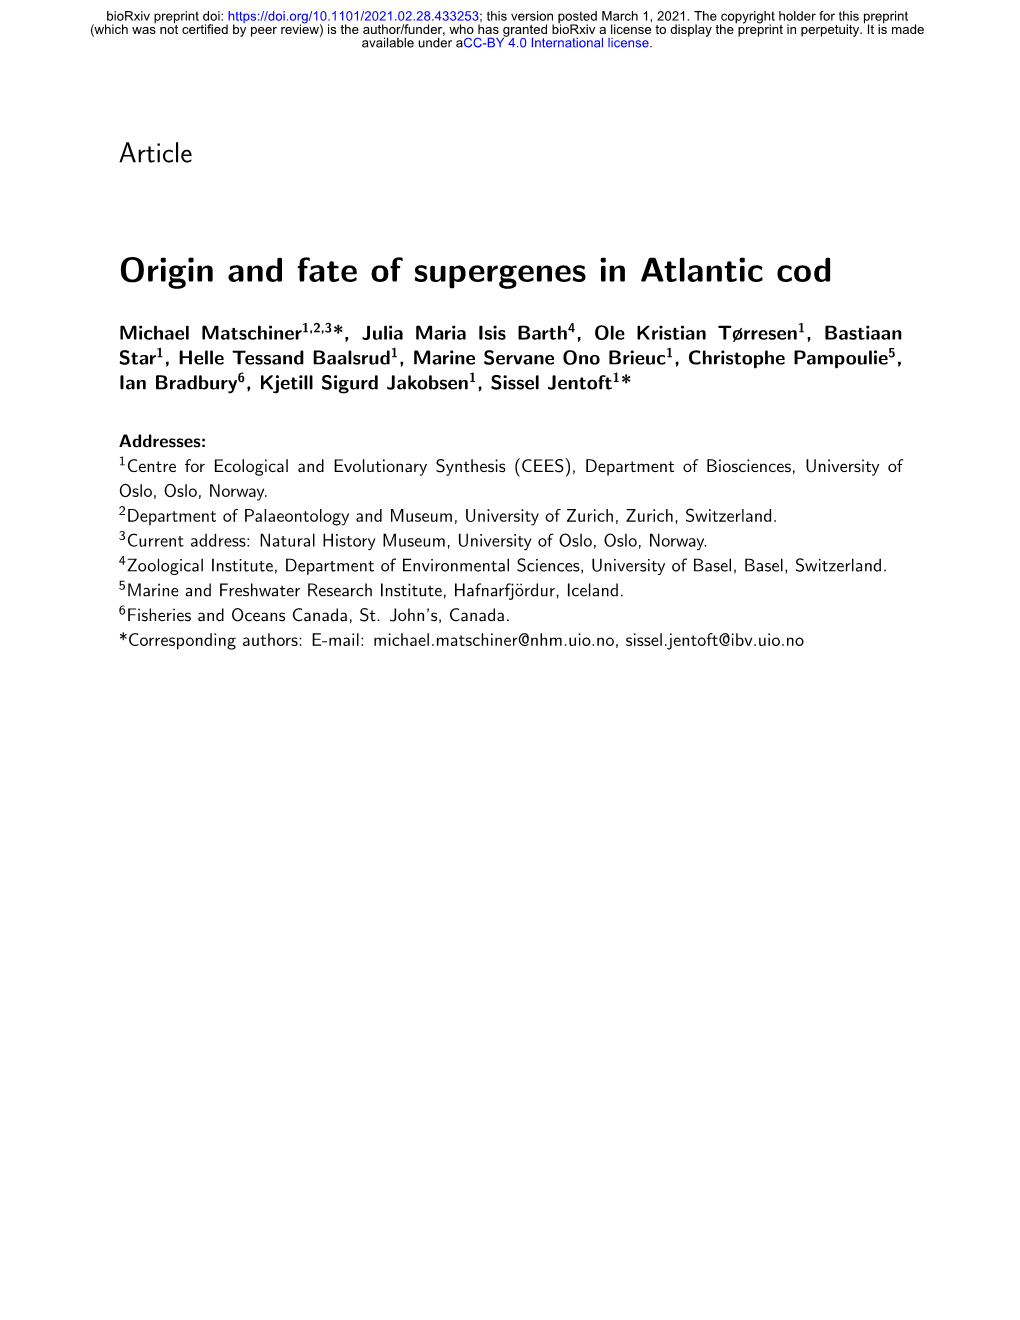 Origin and Fate of Supergenes in Atlantic Cod